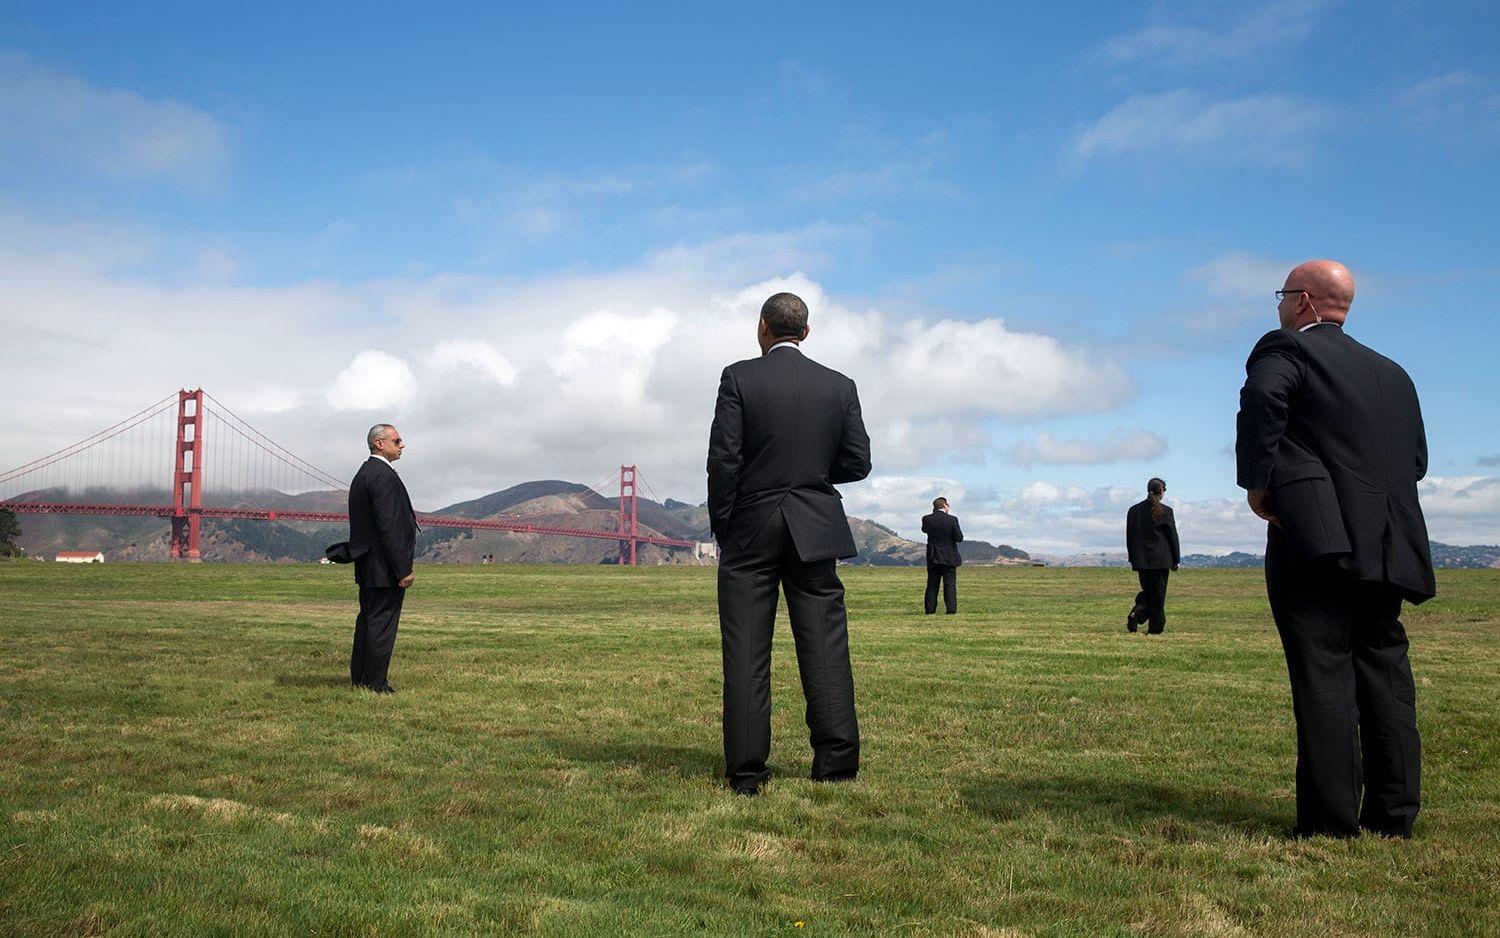 23 juli, 2014: Secret Service omringar Barack Obama när han blickar ut över Golden Gate-bron i San Francisco. Foto: Pete Souza / Vita Huset